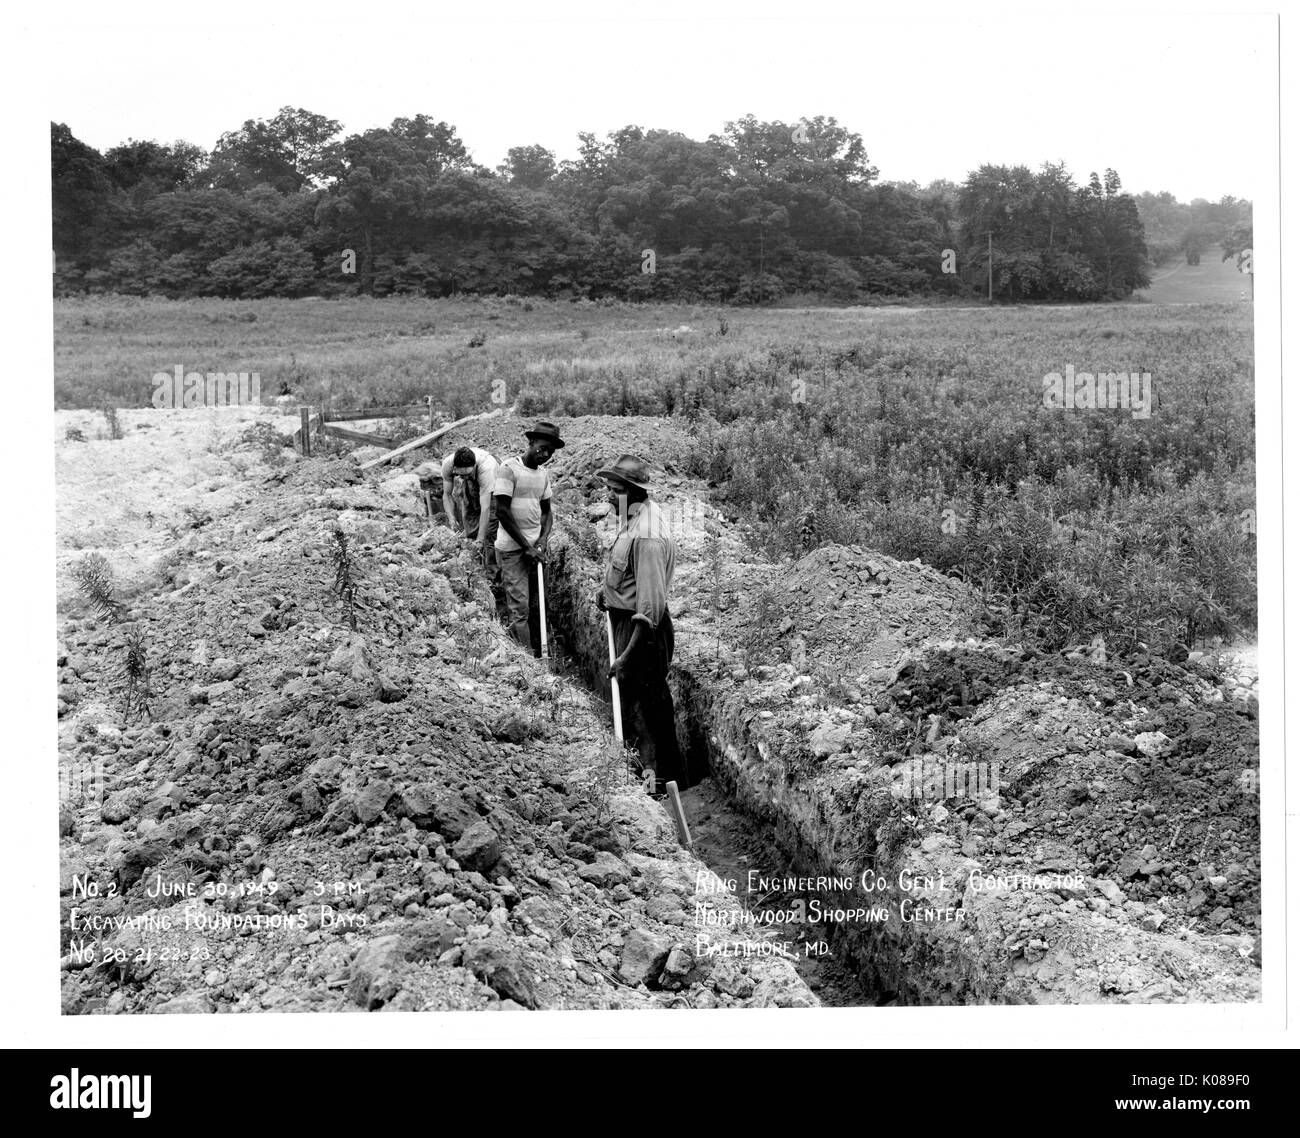 Foto der Arbeitnehmer für Ring Ingenieurbüro Generalunternehmung arbeiten auf dem unbebauten Gelände der Northwood Shopping Center in Baltimore, Maryland, mit Feldern und Bäumen im Hintergrund, Baltimore, Maryland, 30. Juni 1949. Stockfoto